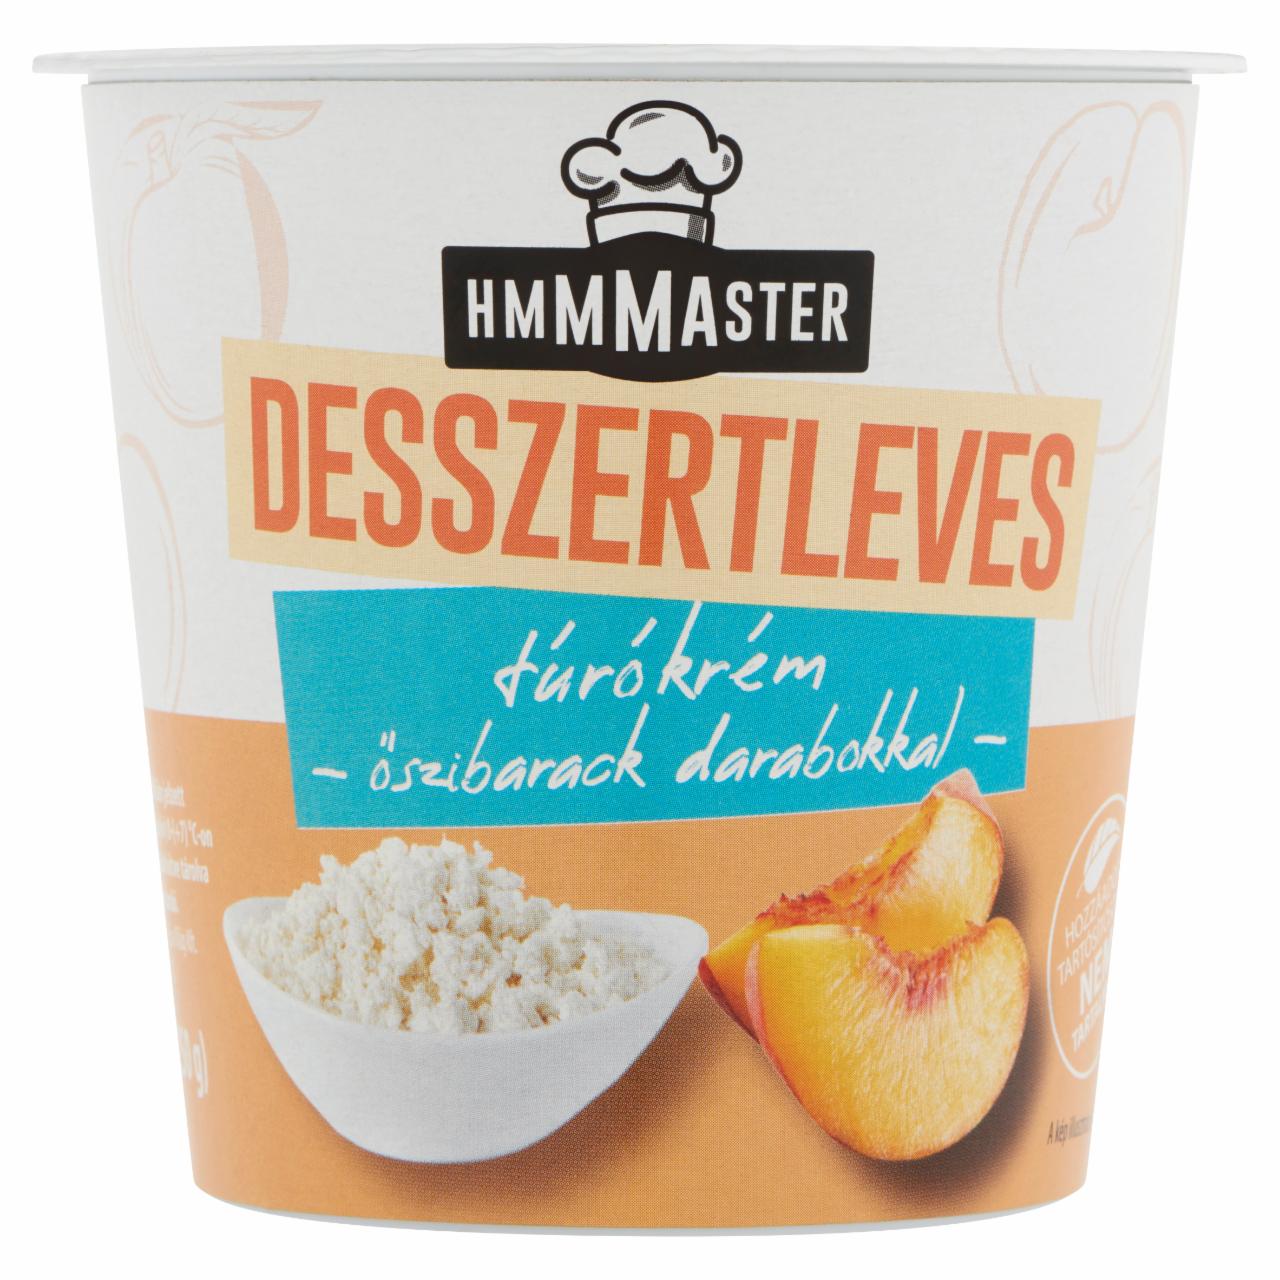 Képek - Hmmmaster túrókrém desszertleves őszibarack darabokkal 260 ml